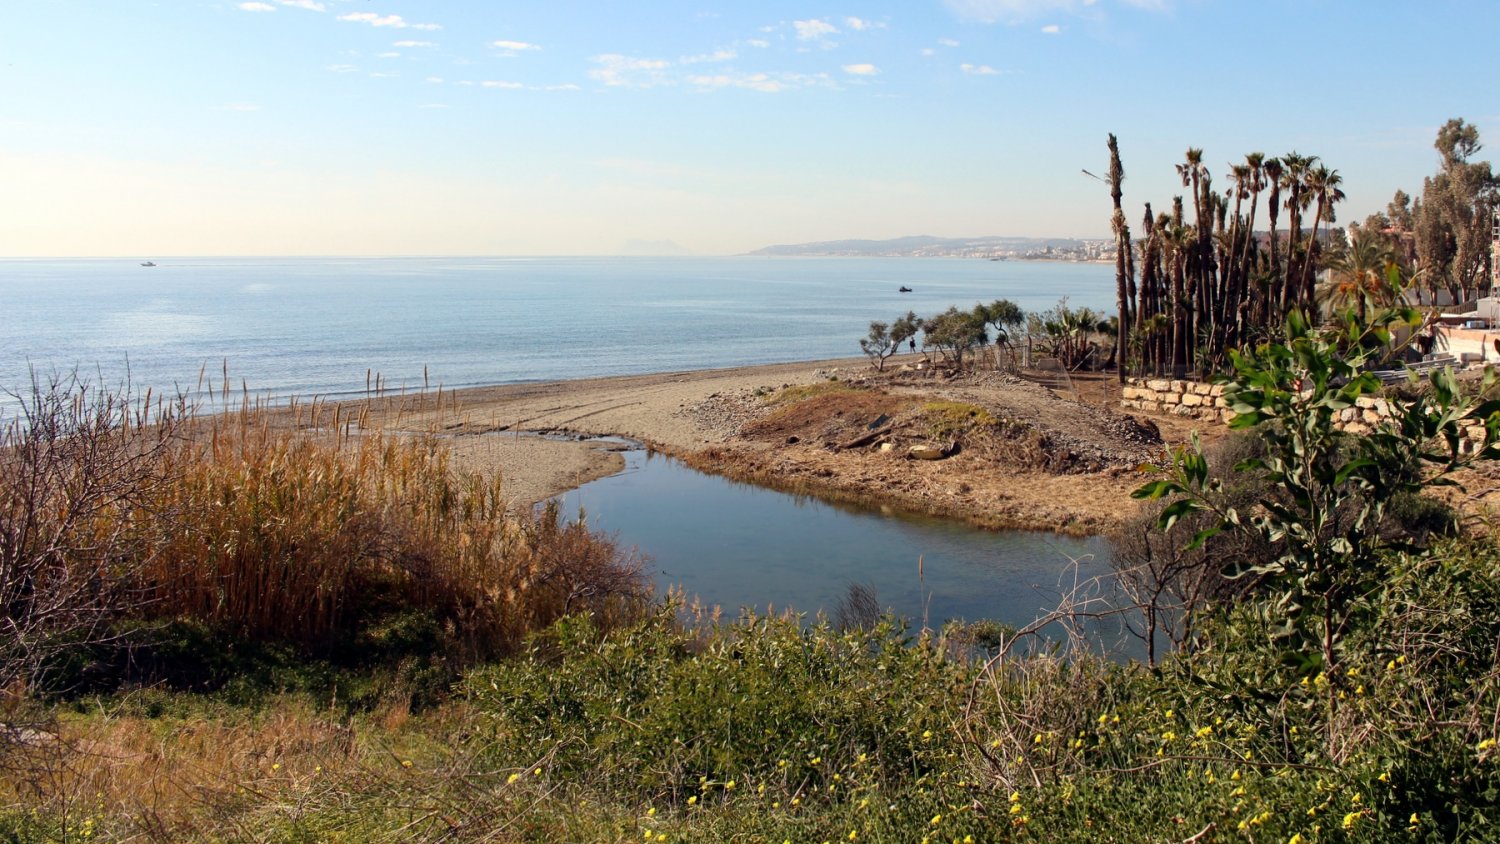 Estepona proyecta un puente sobre el arroyo Guadalobón para continuar el corredor litoral en la zona oeste